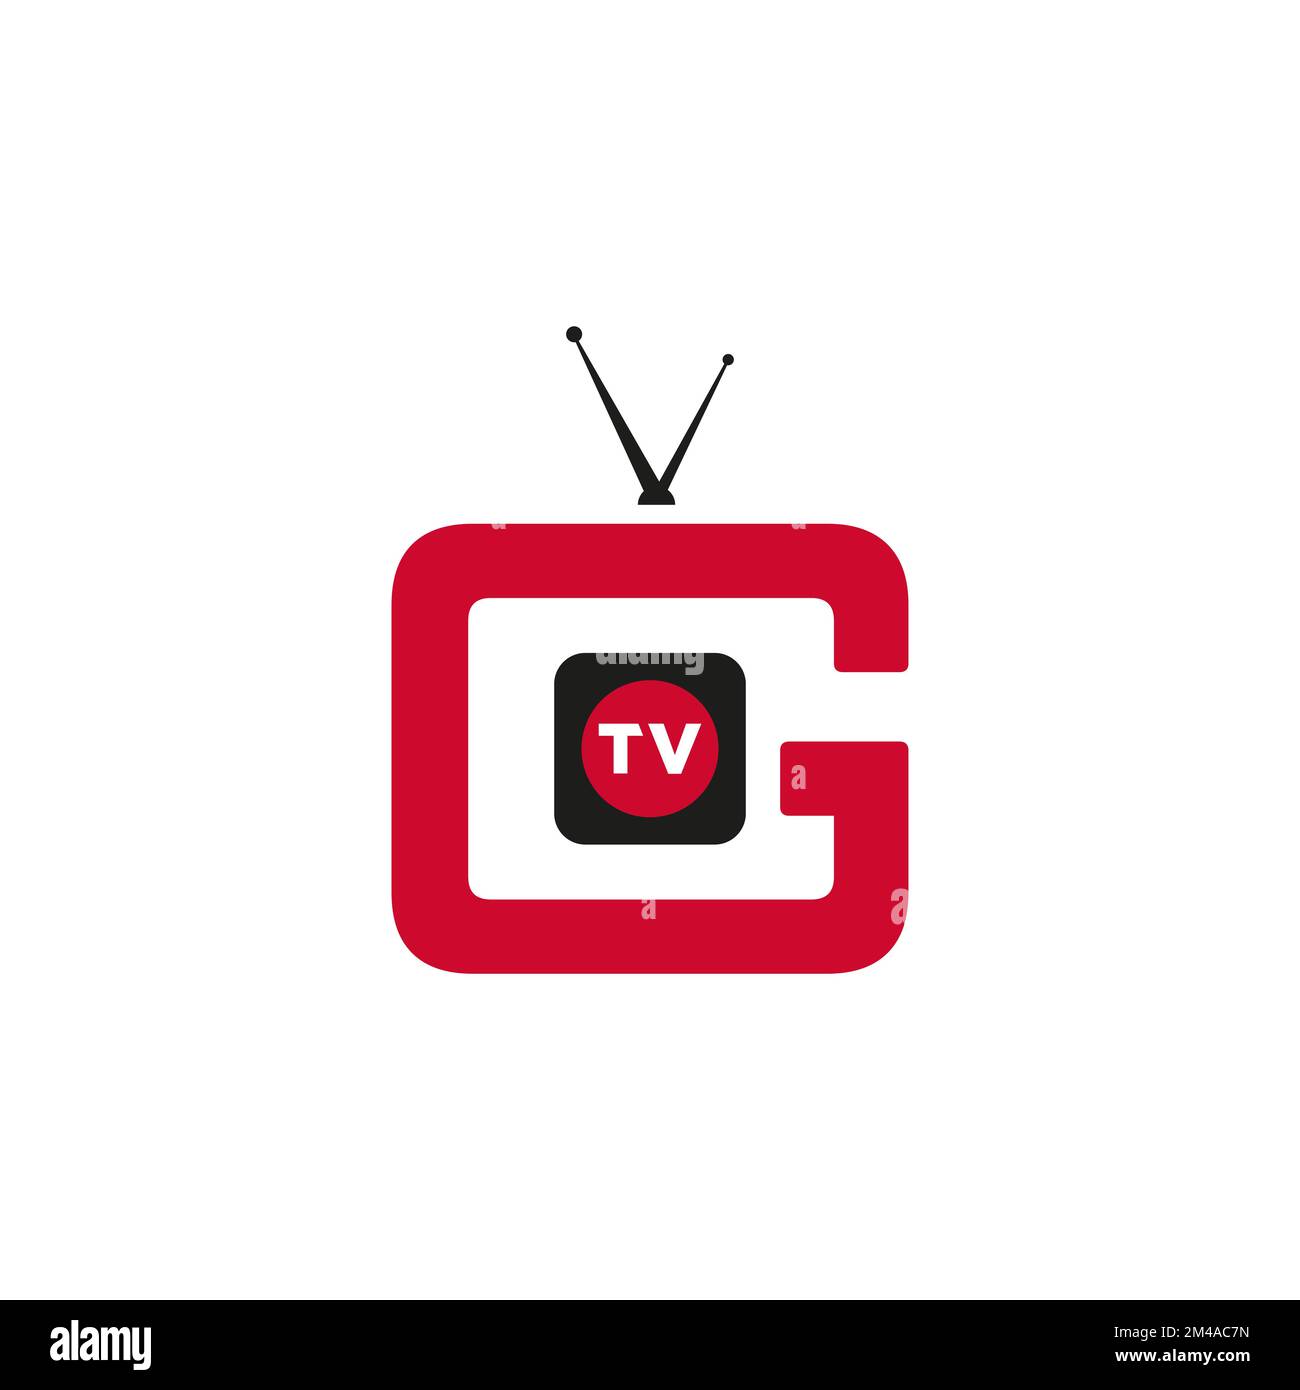 tv television electronic media logo icon vector templates Stock Vector